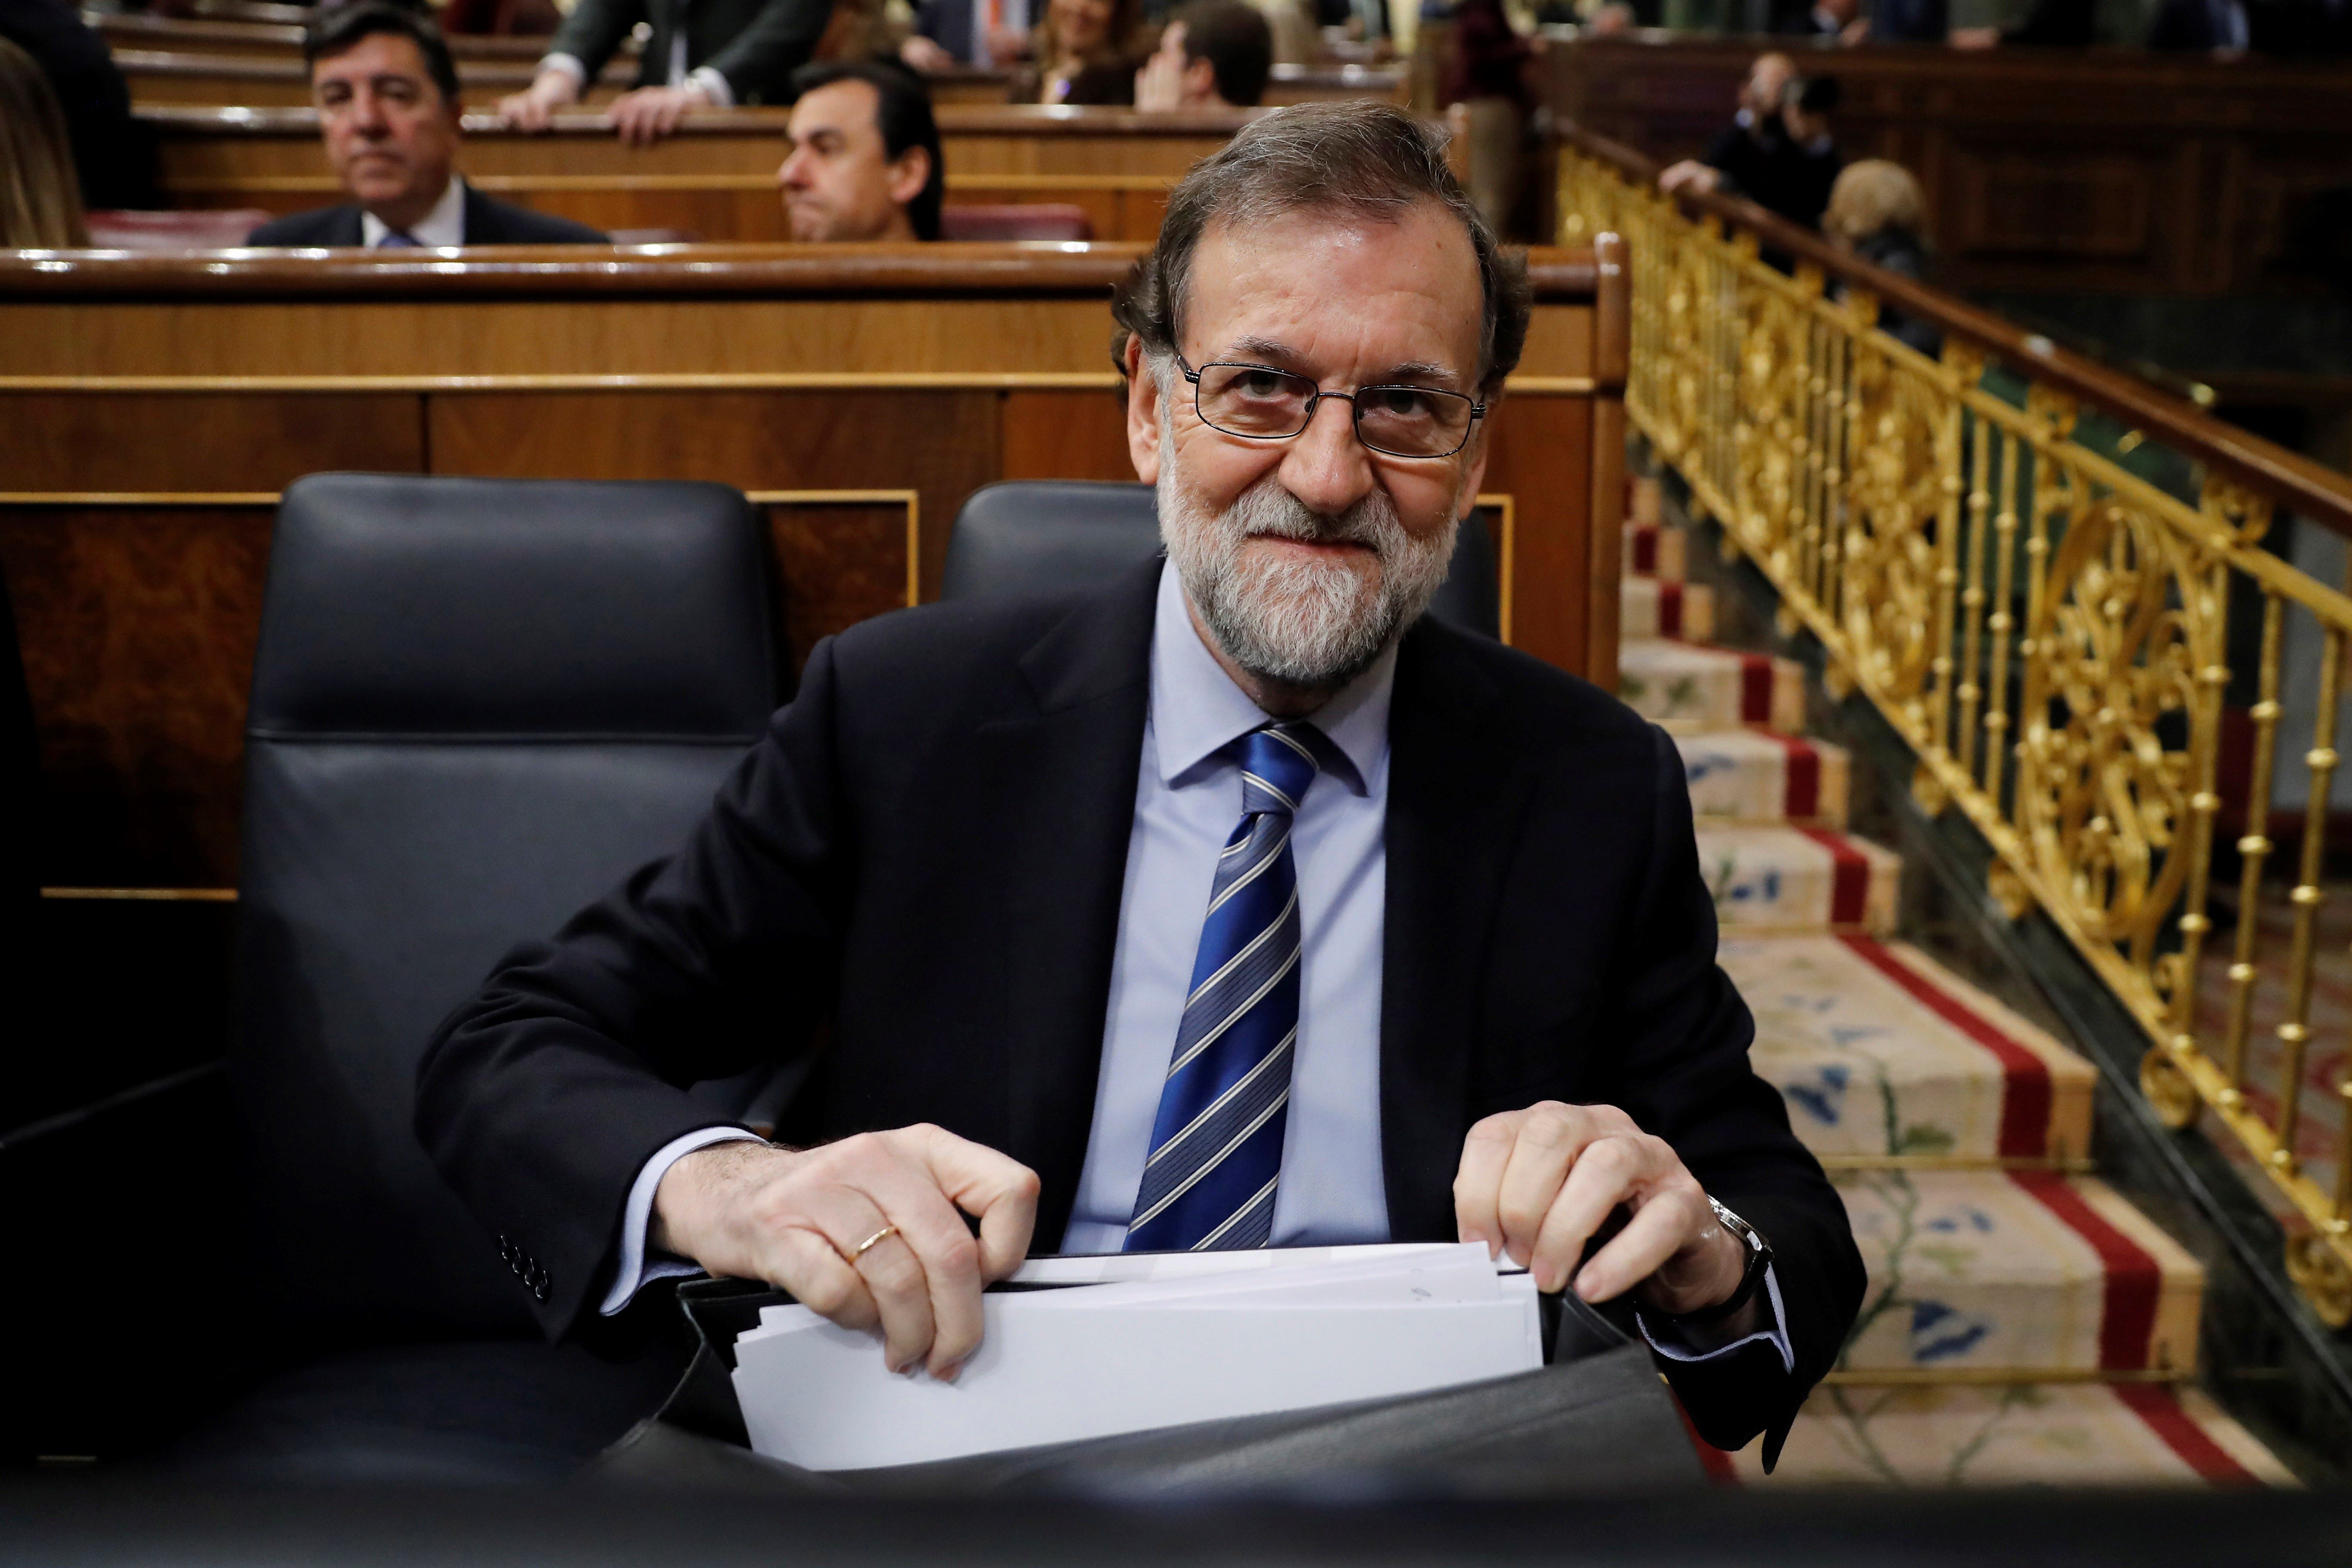 Rajoy endureix l'embat contra els líders del procés per frenar Cs